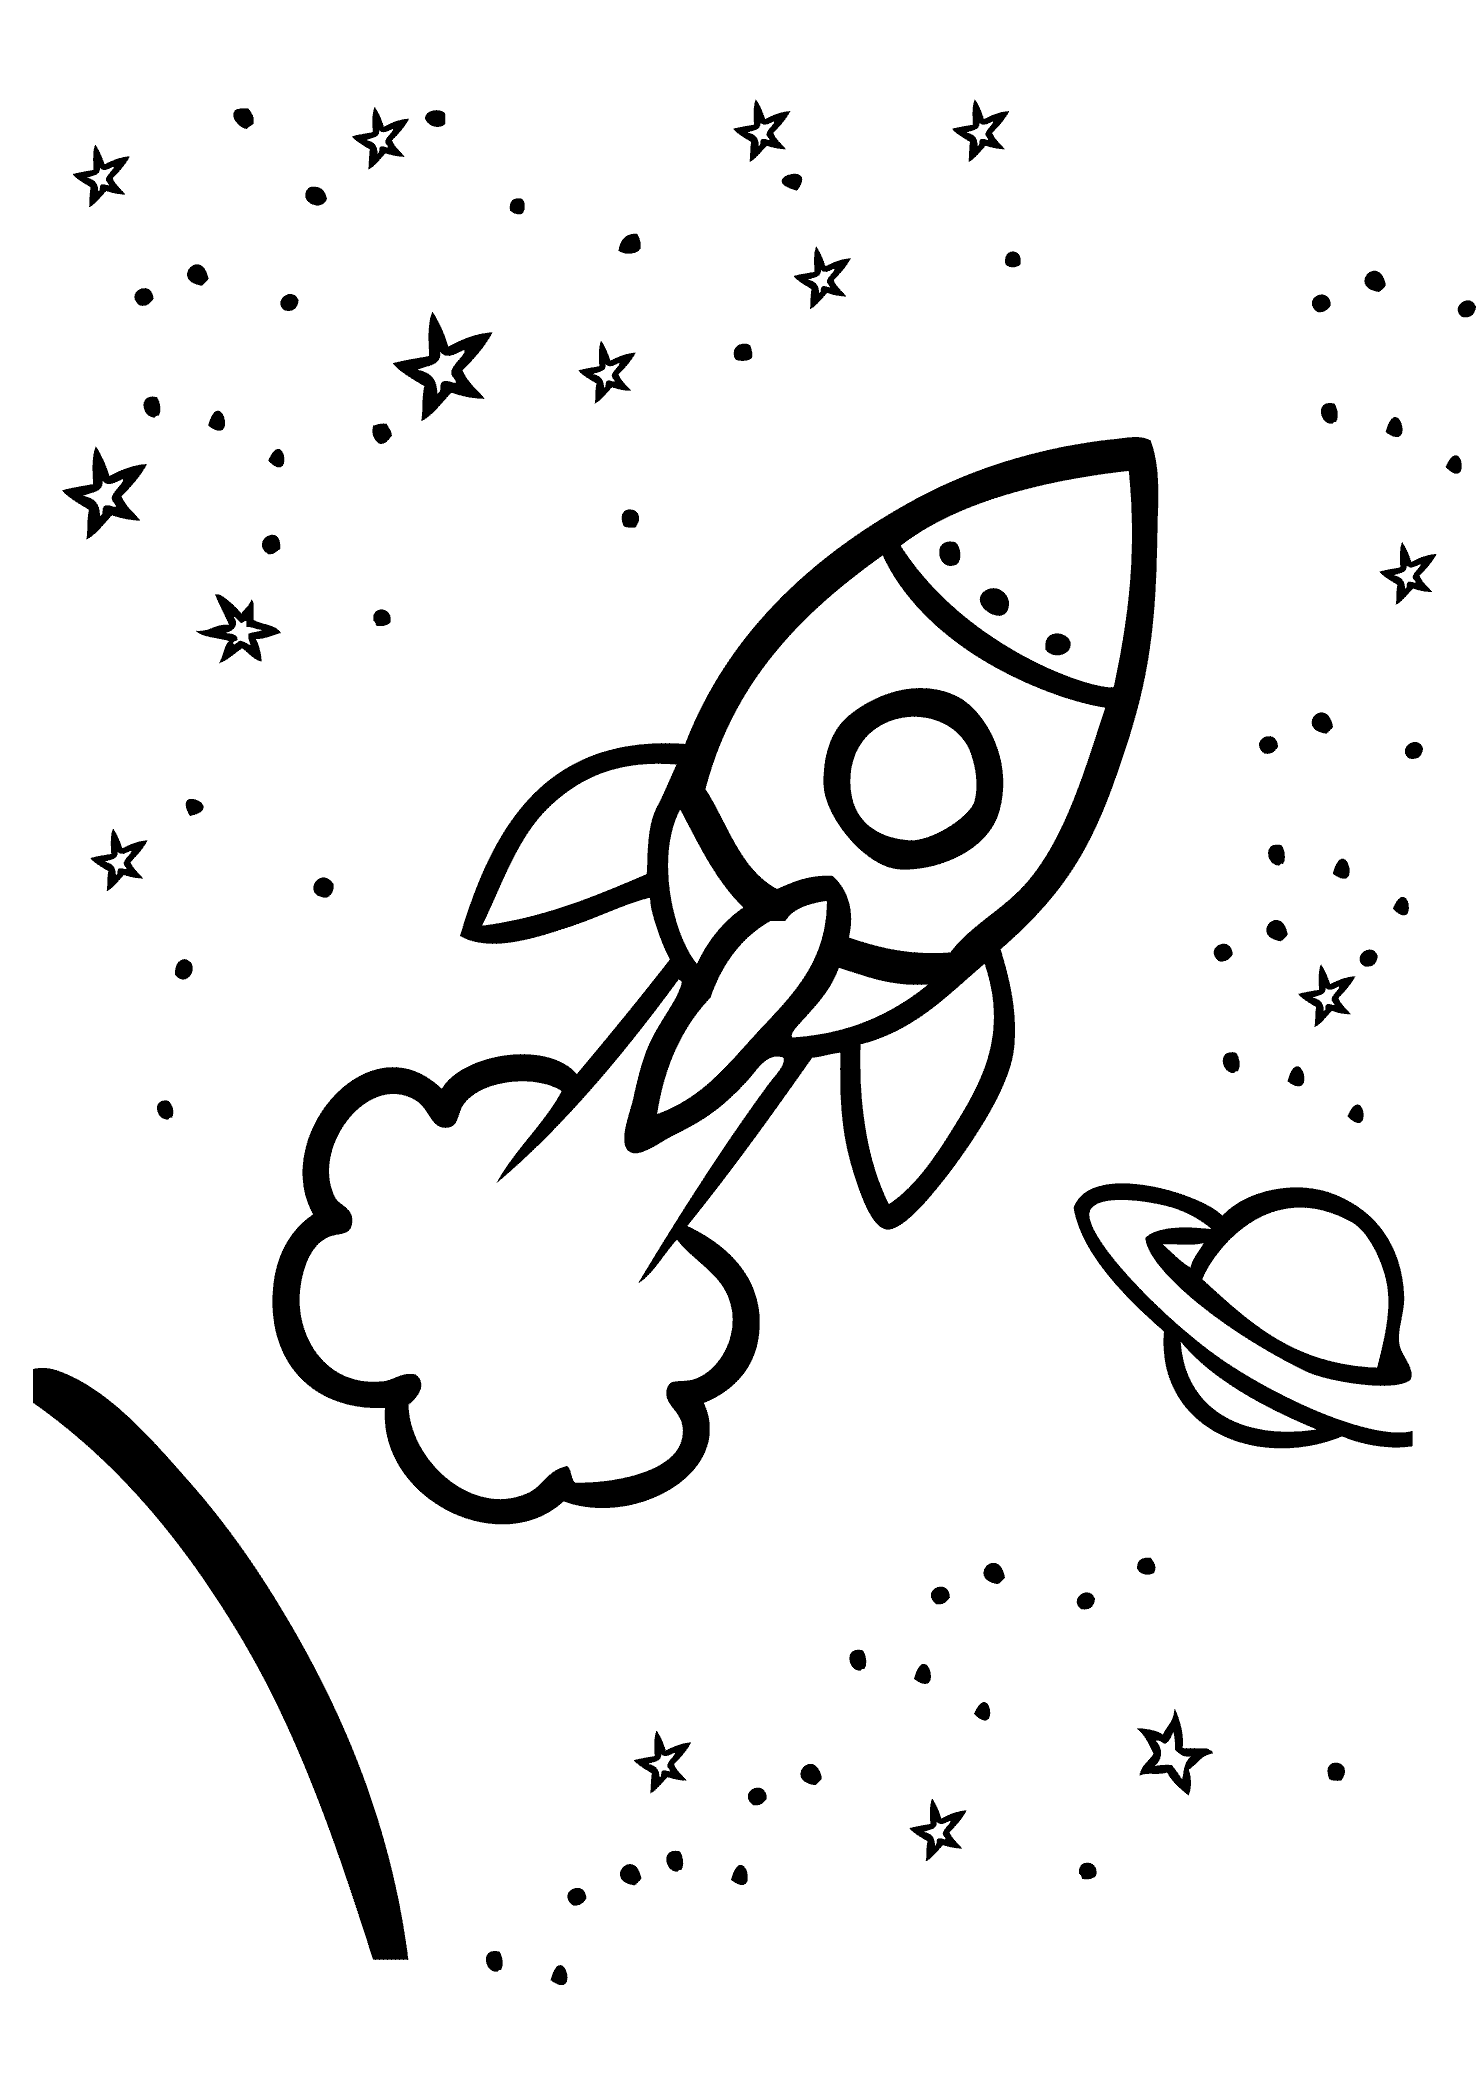 Раскраски к дню космонавтики для детей распечатать. Раскраска. В космосе. Ракета раскраска. Космос раскраска для детей. Раскраска ракета в космосе.